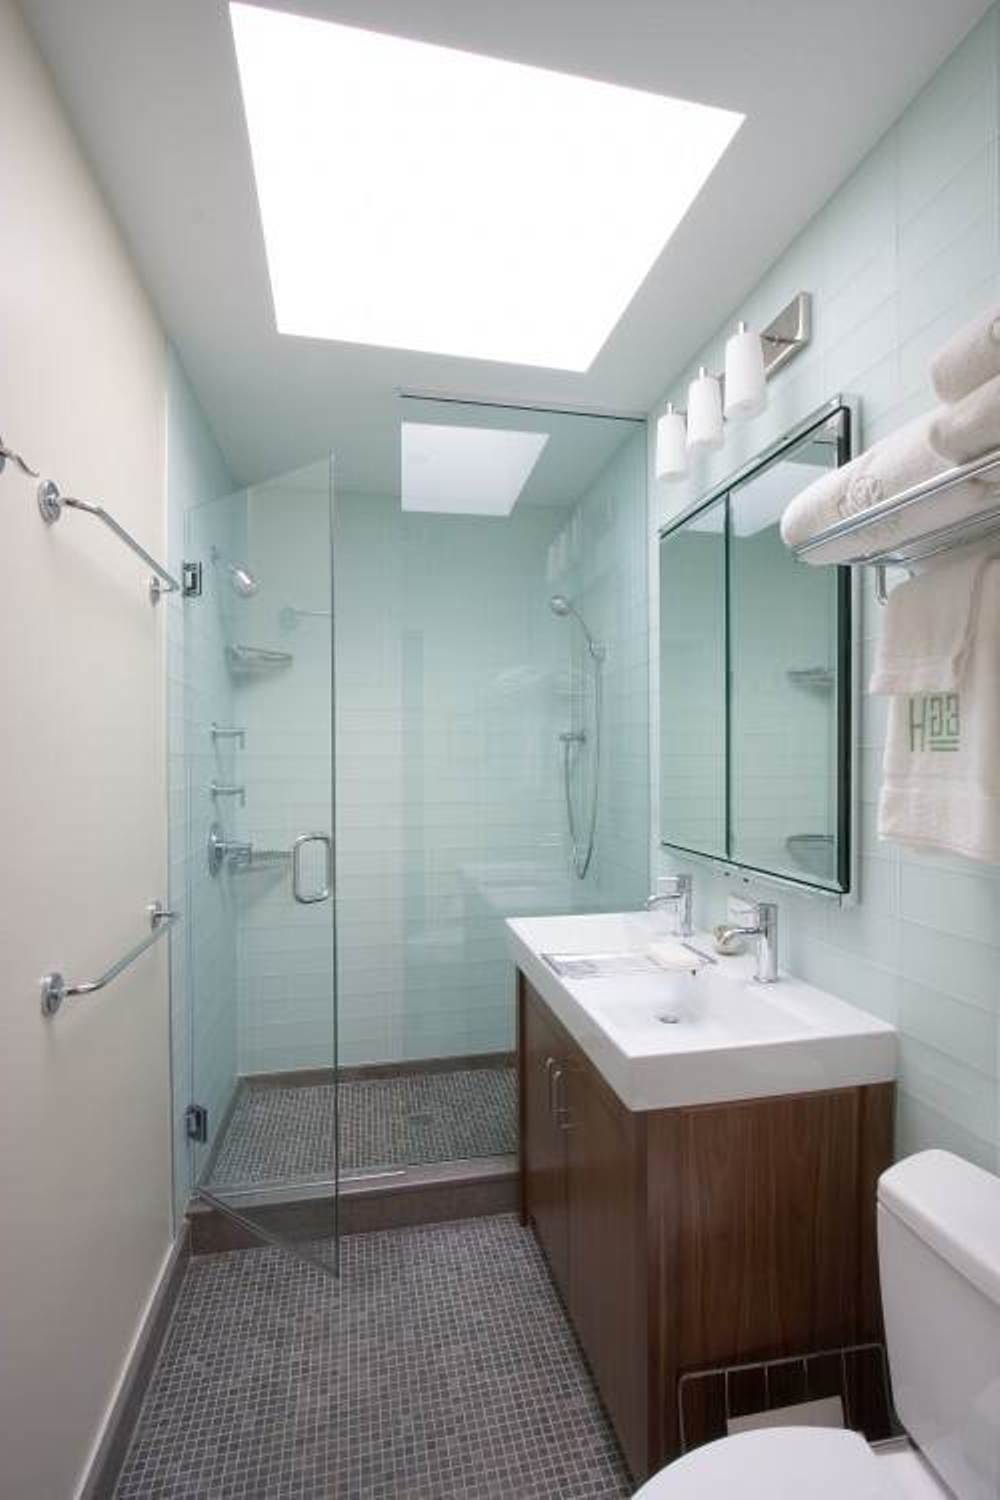 bathrbathroom-white-scheme-small-modern-bathroom-design-ideas-modern-bathroom-designs-for-small-spaces